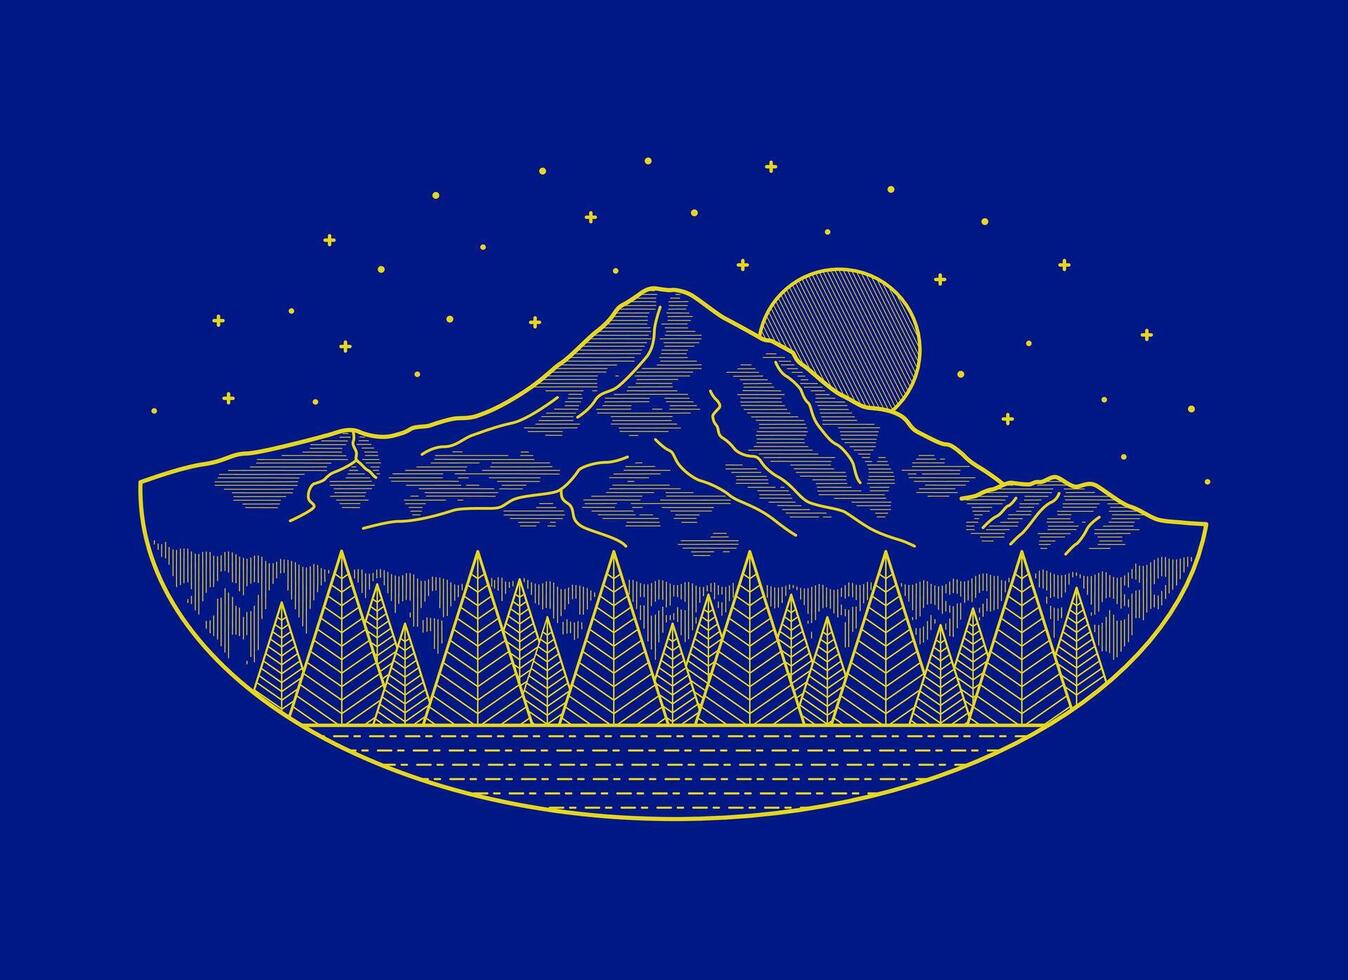 Mt Hood Oregon mono line vector illustration for t shirt patch badge design